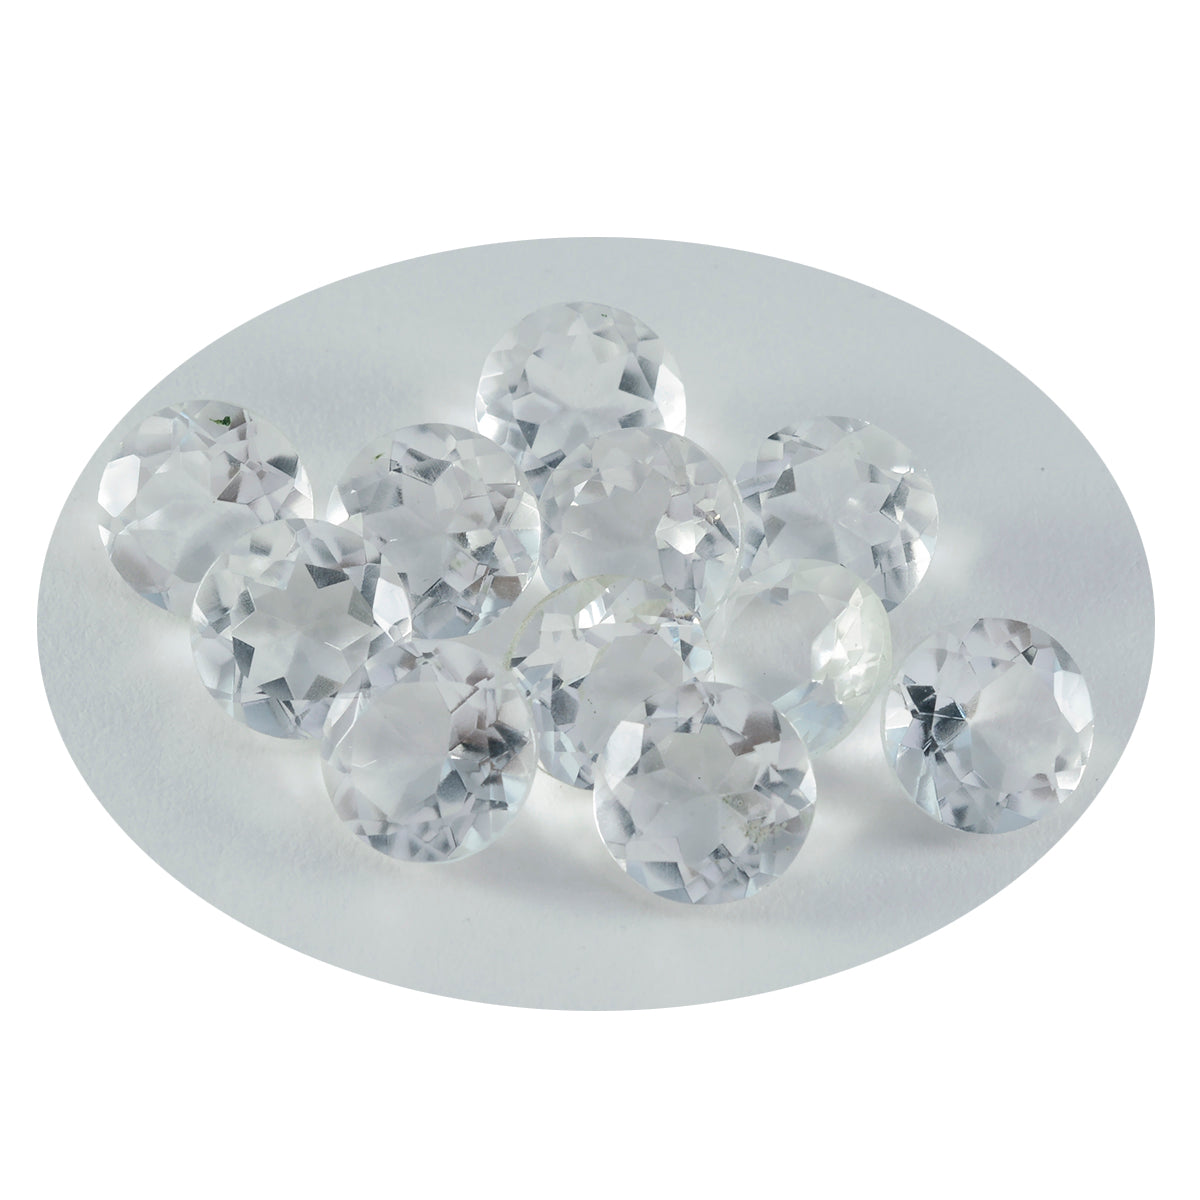 Riyogems 1 Stück weißer Kristallquarz, facettiert, 9 x 9 mm, runde Form, AAA-Qualität, lose Edelsteine